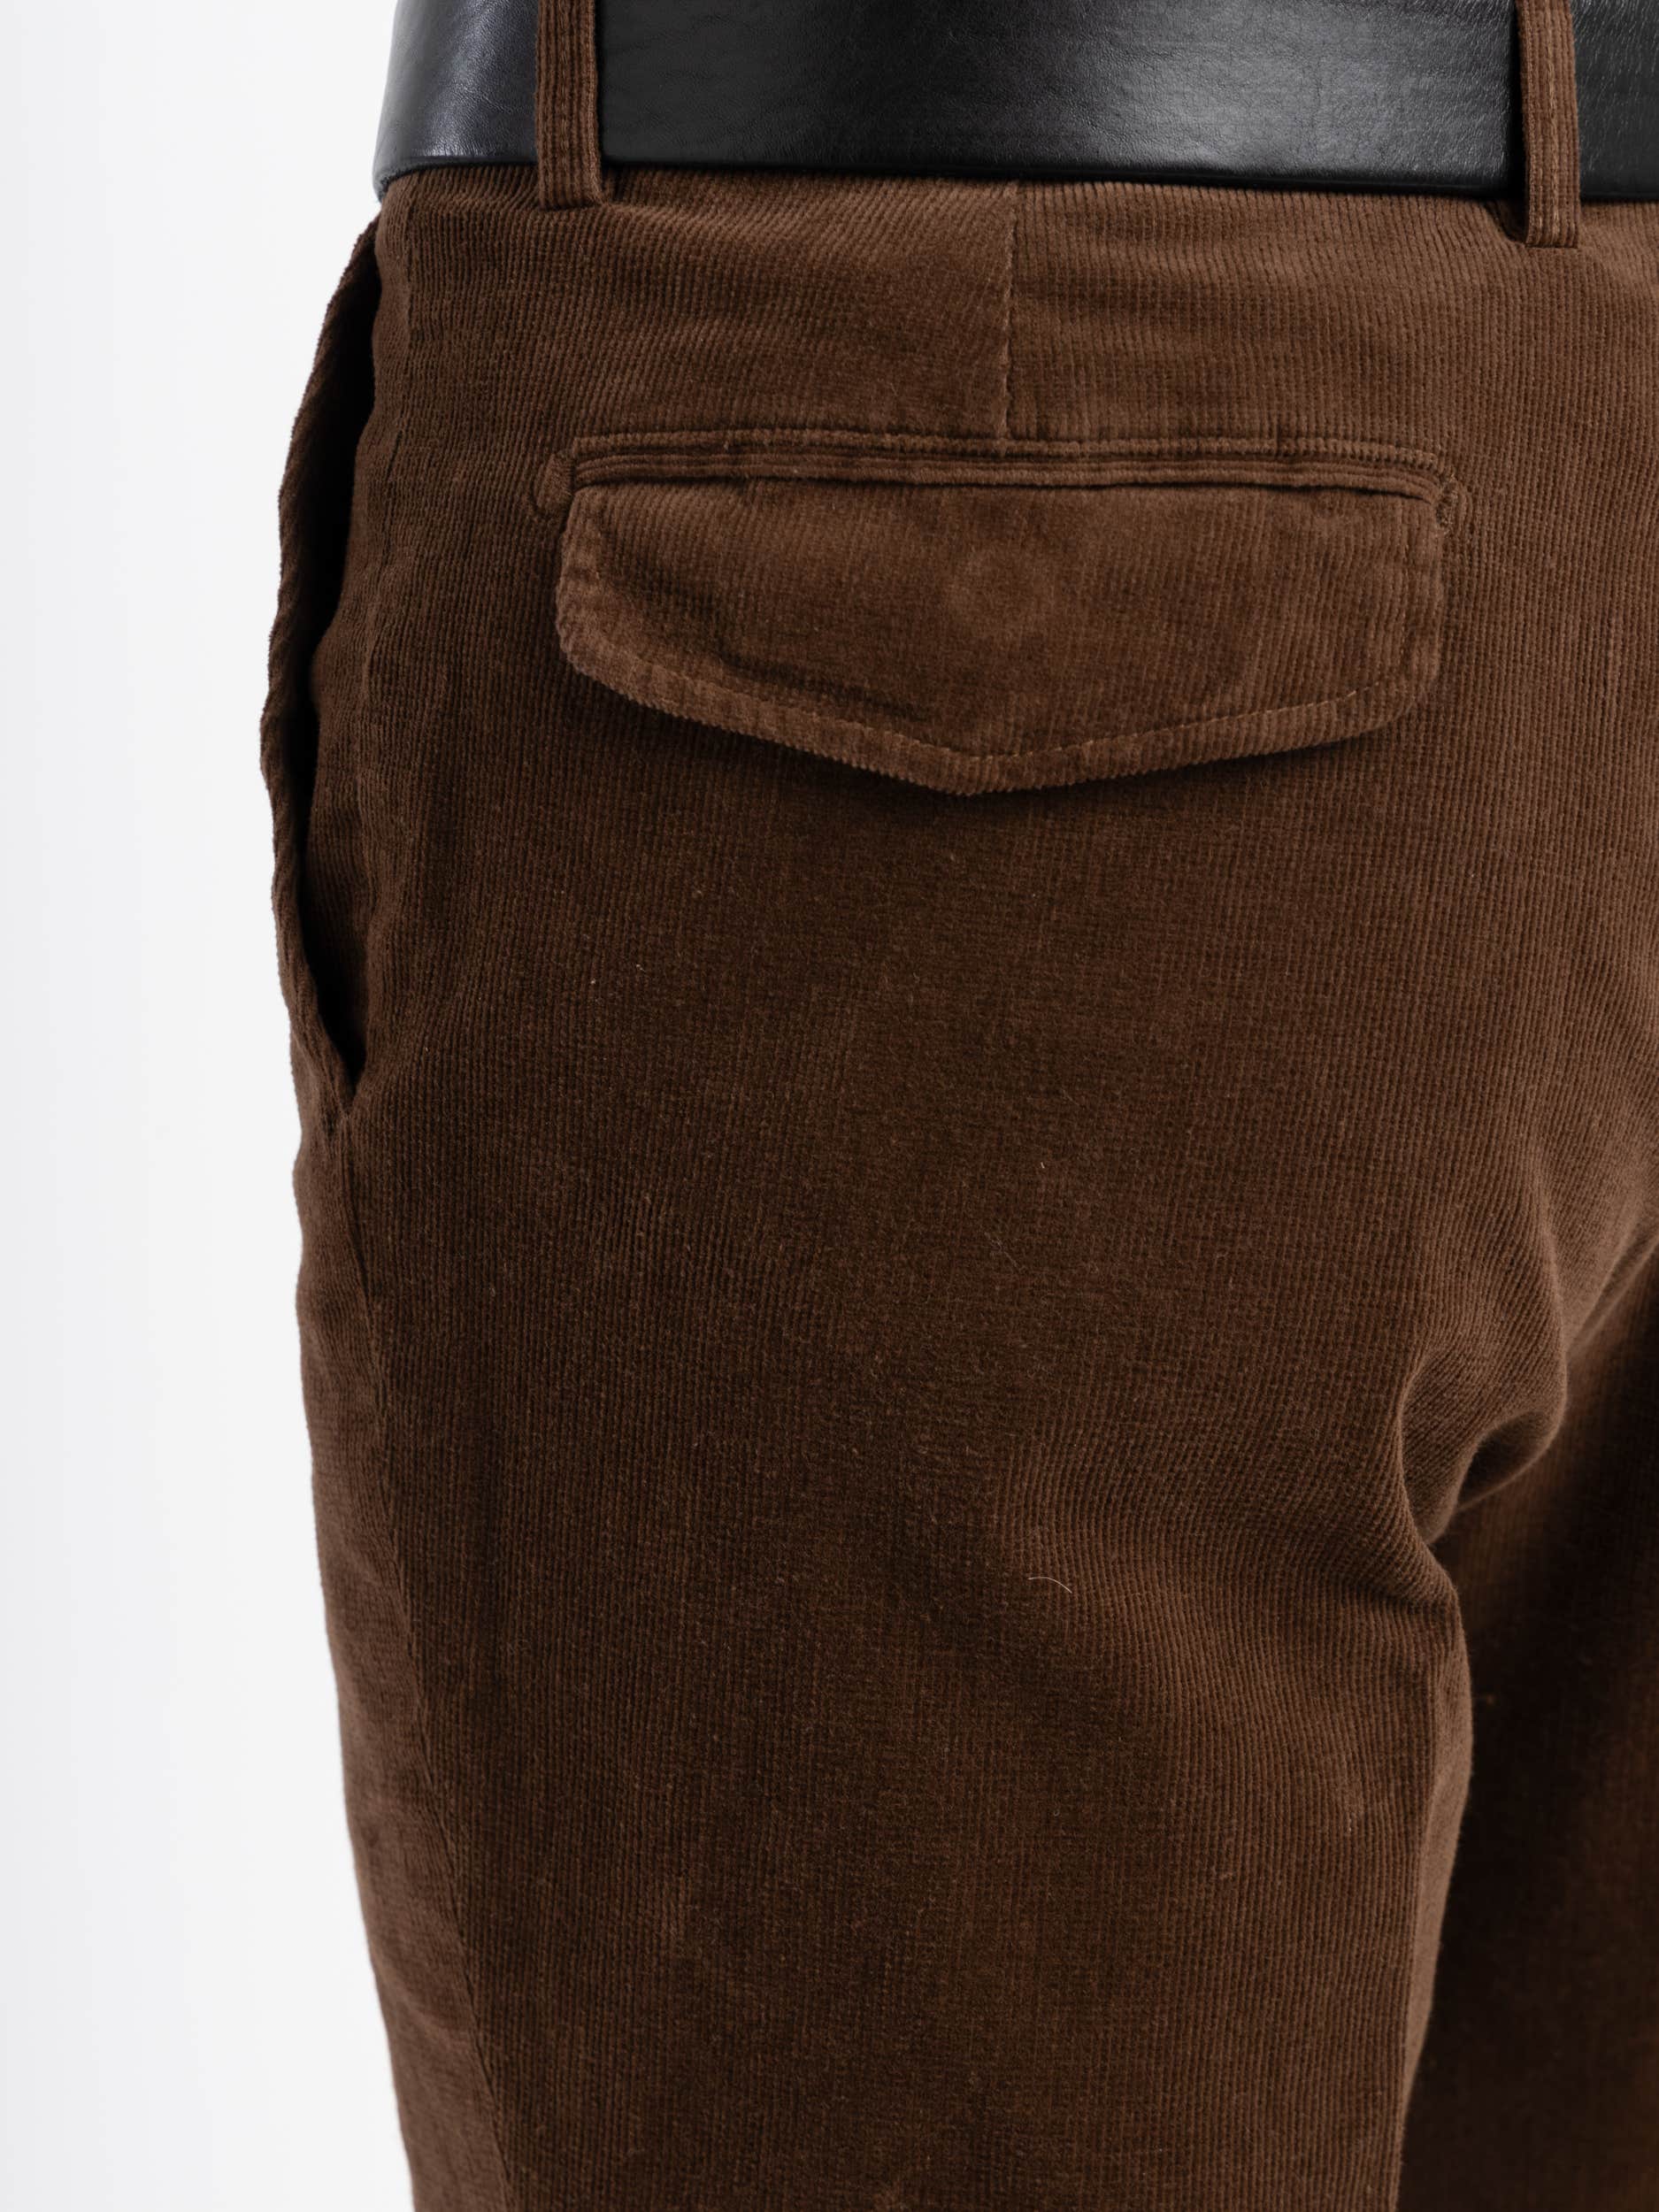 Dark Brown Cotton Dress Pants, Size 56 –